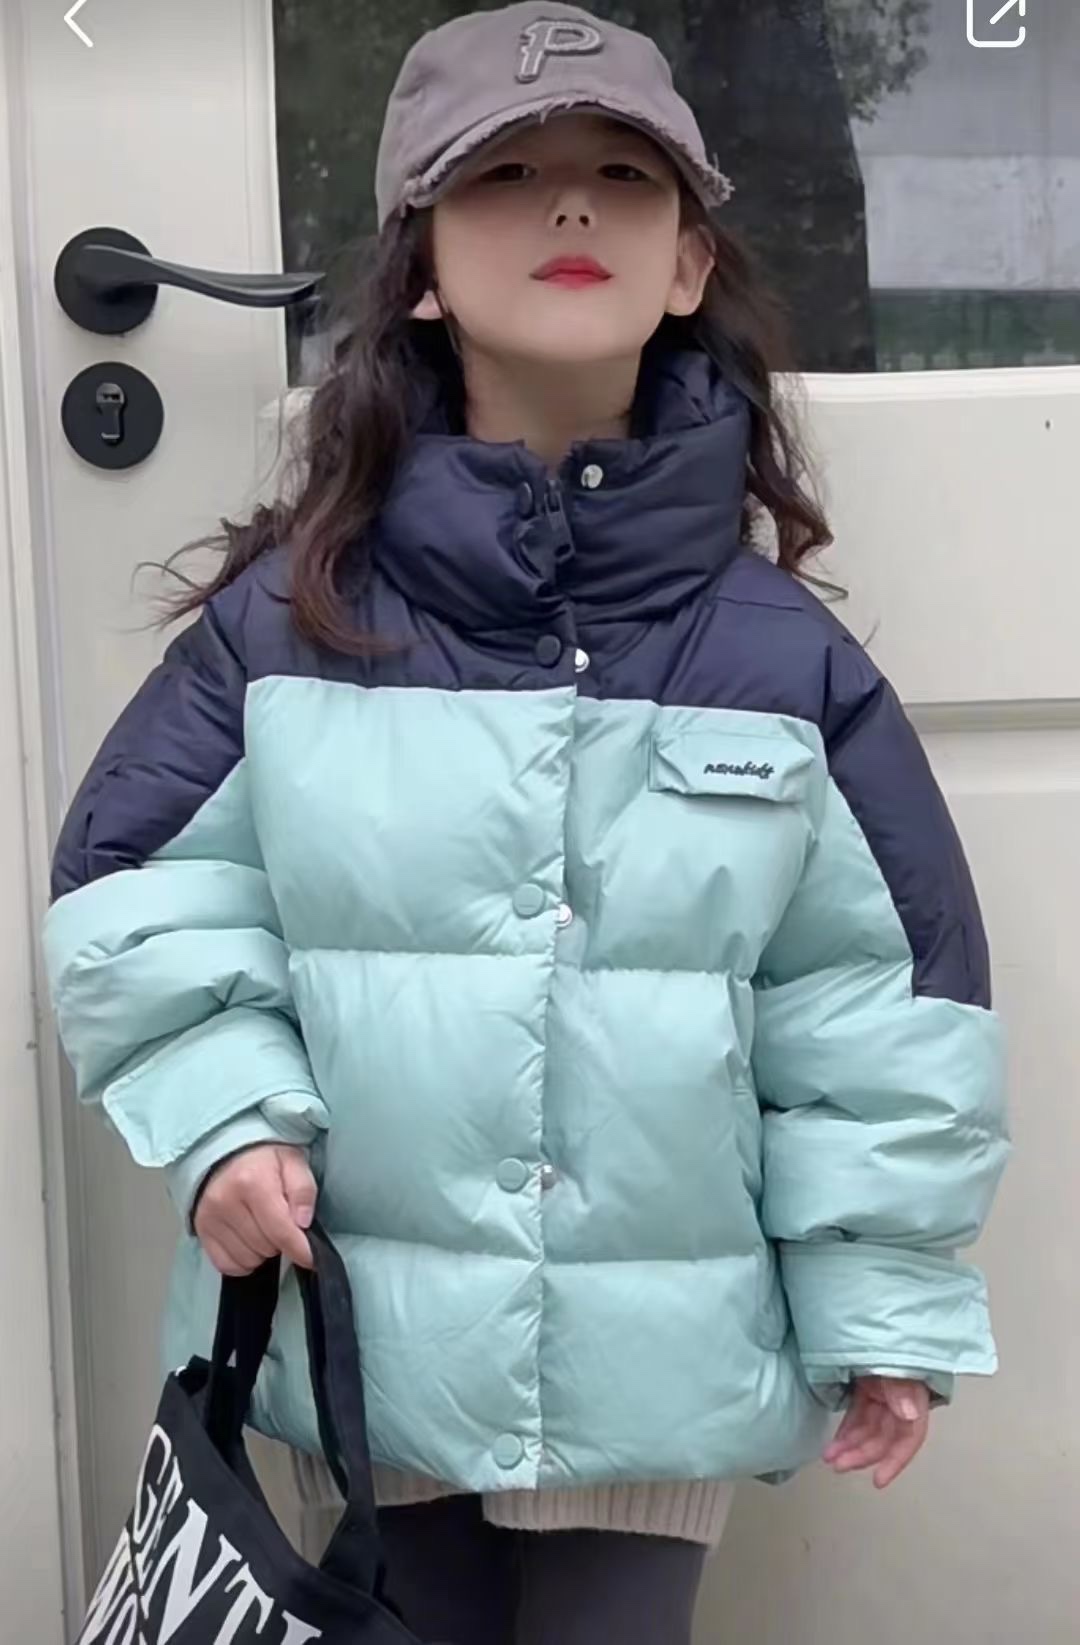 实体店货波拉韩国儿童装女男孩小中大童青少年亲子立领羽绒服外套 - 图2